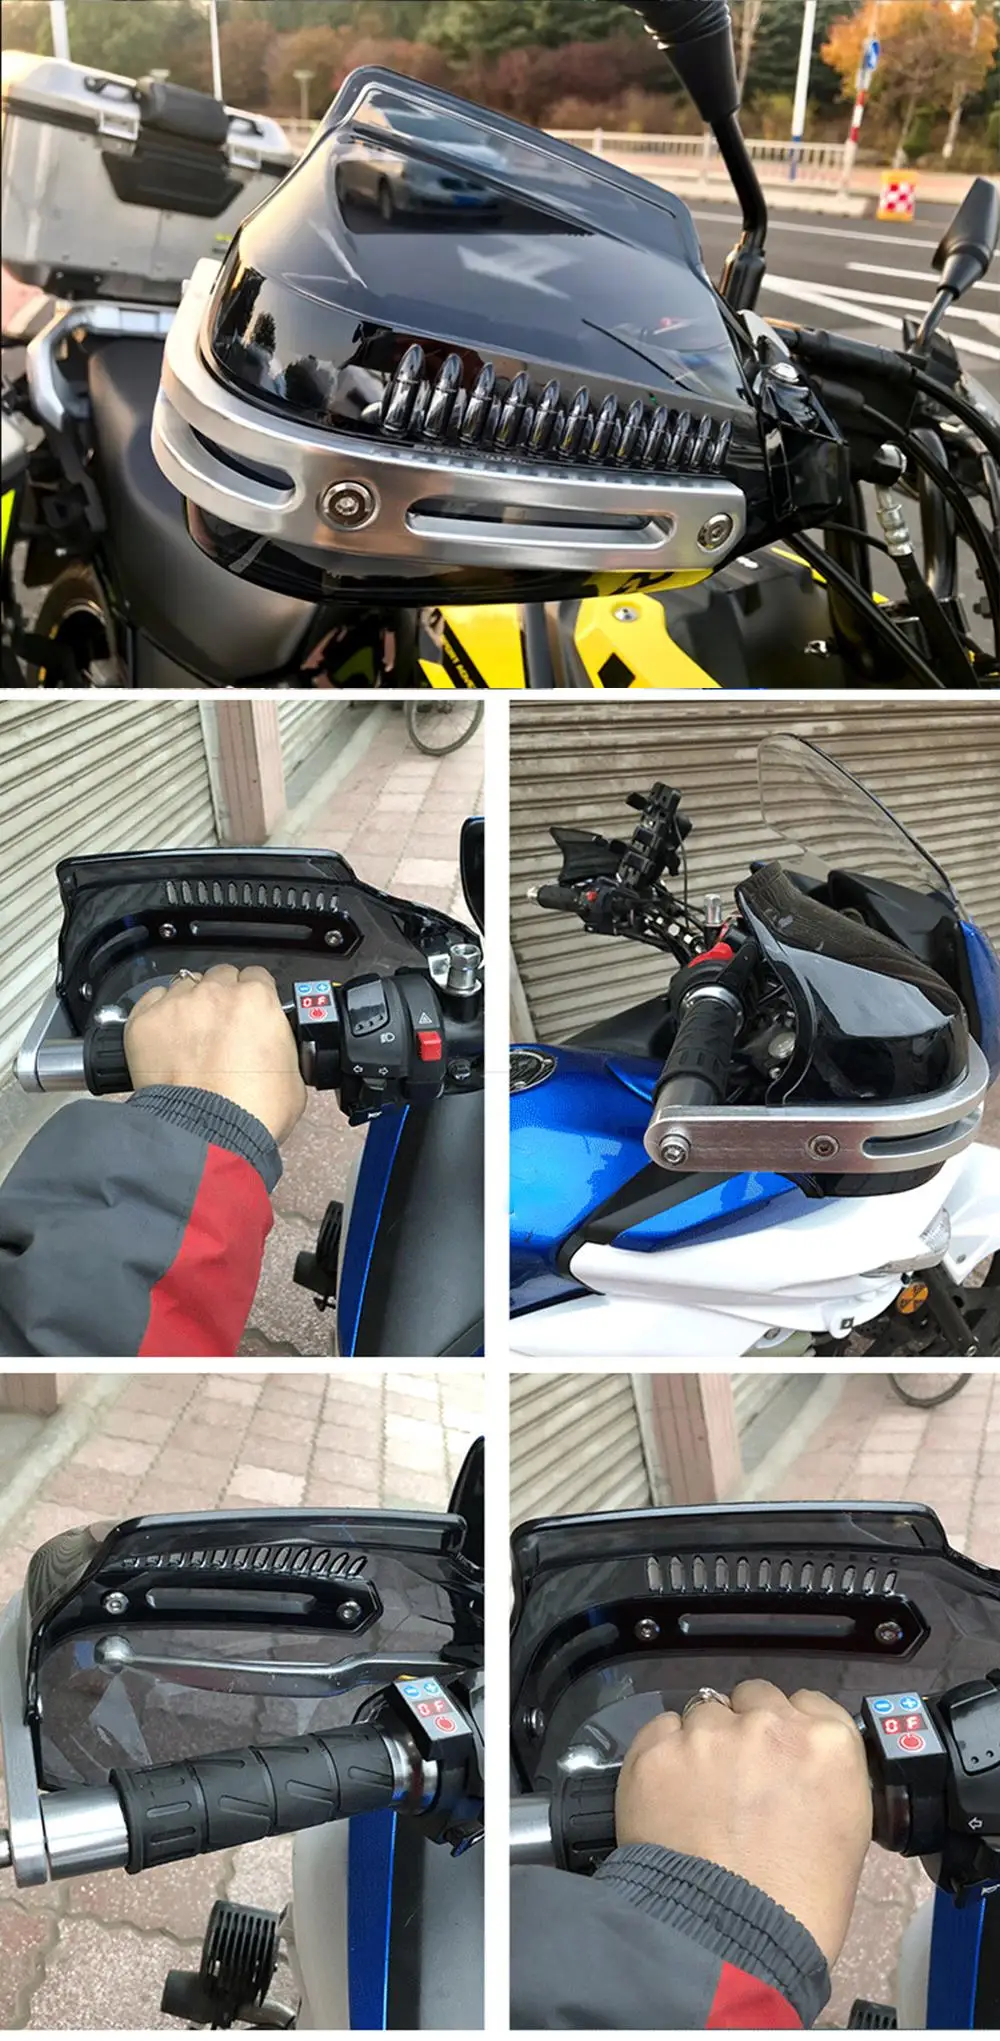 Светодиодный мотоциклетный щиток для мотокросса, защита для рук для kawasaki vulcan 1500 z900 kxf 250 zzr 600 ex650 z750 ninja 300 er6f